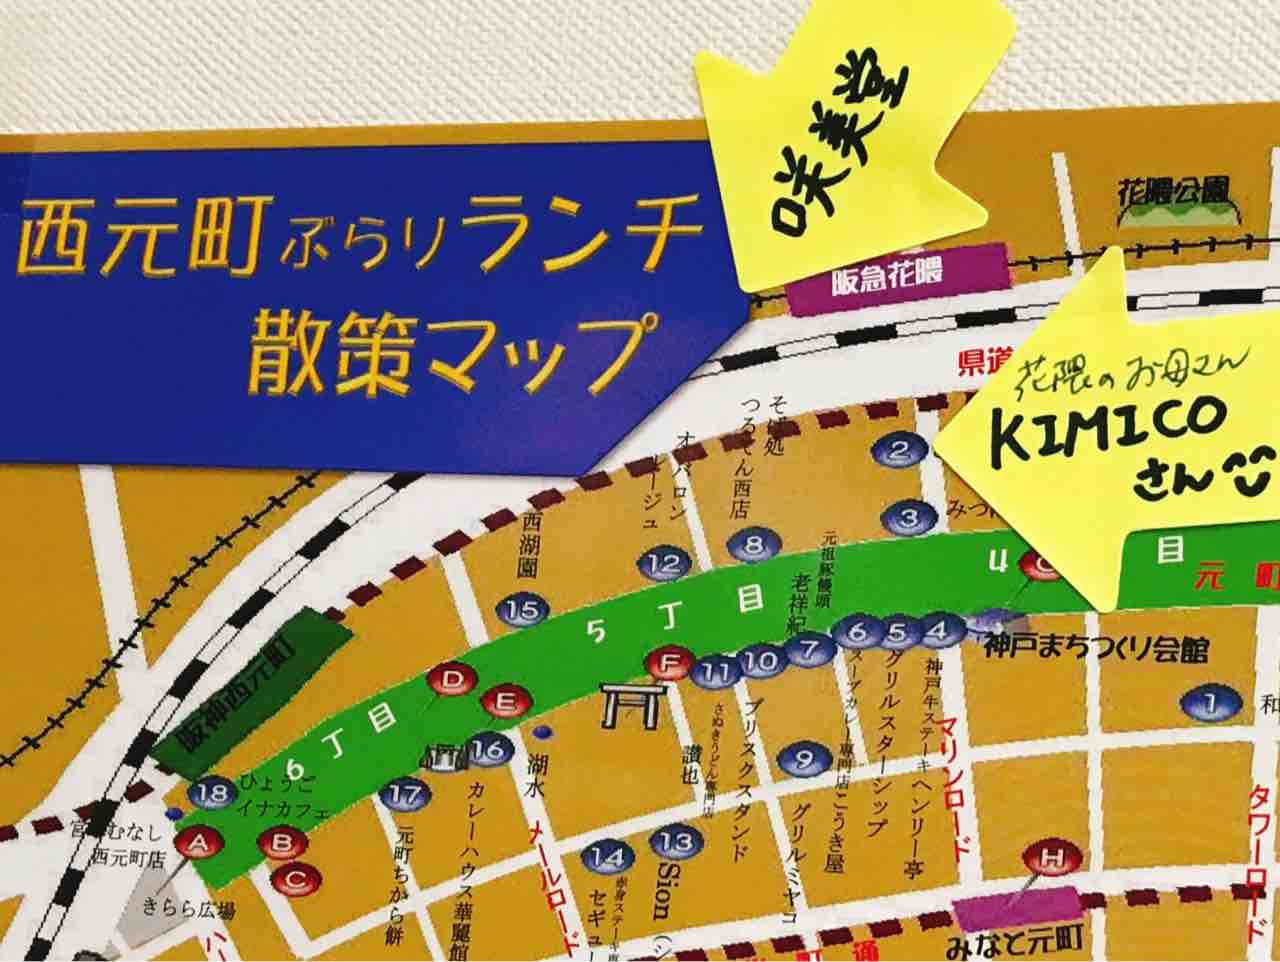 西元町ぶらりランチ散策マップ 神戸の漢方薬店 薬膳スクール 咲美堂 池田のりこのwonderful Days